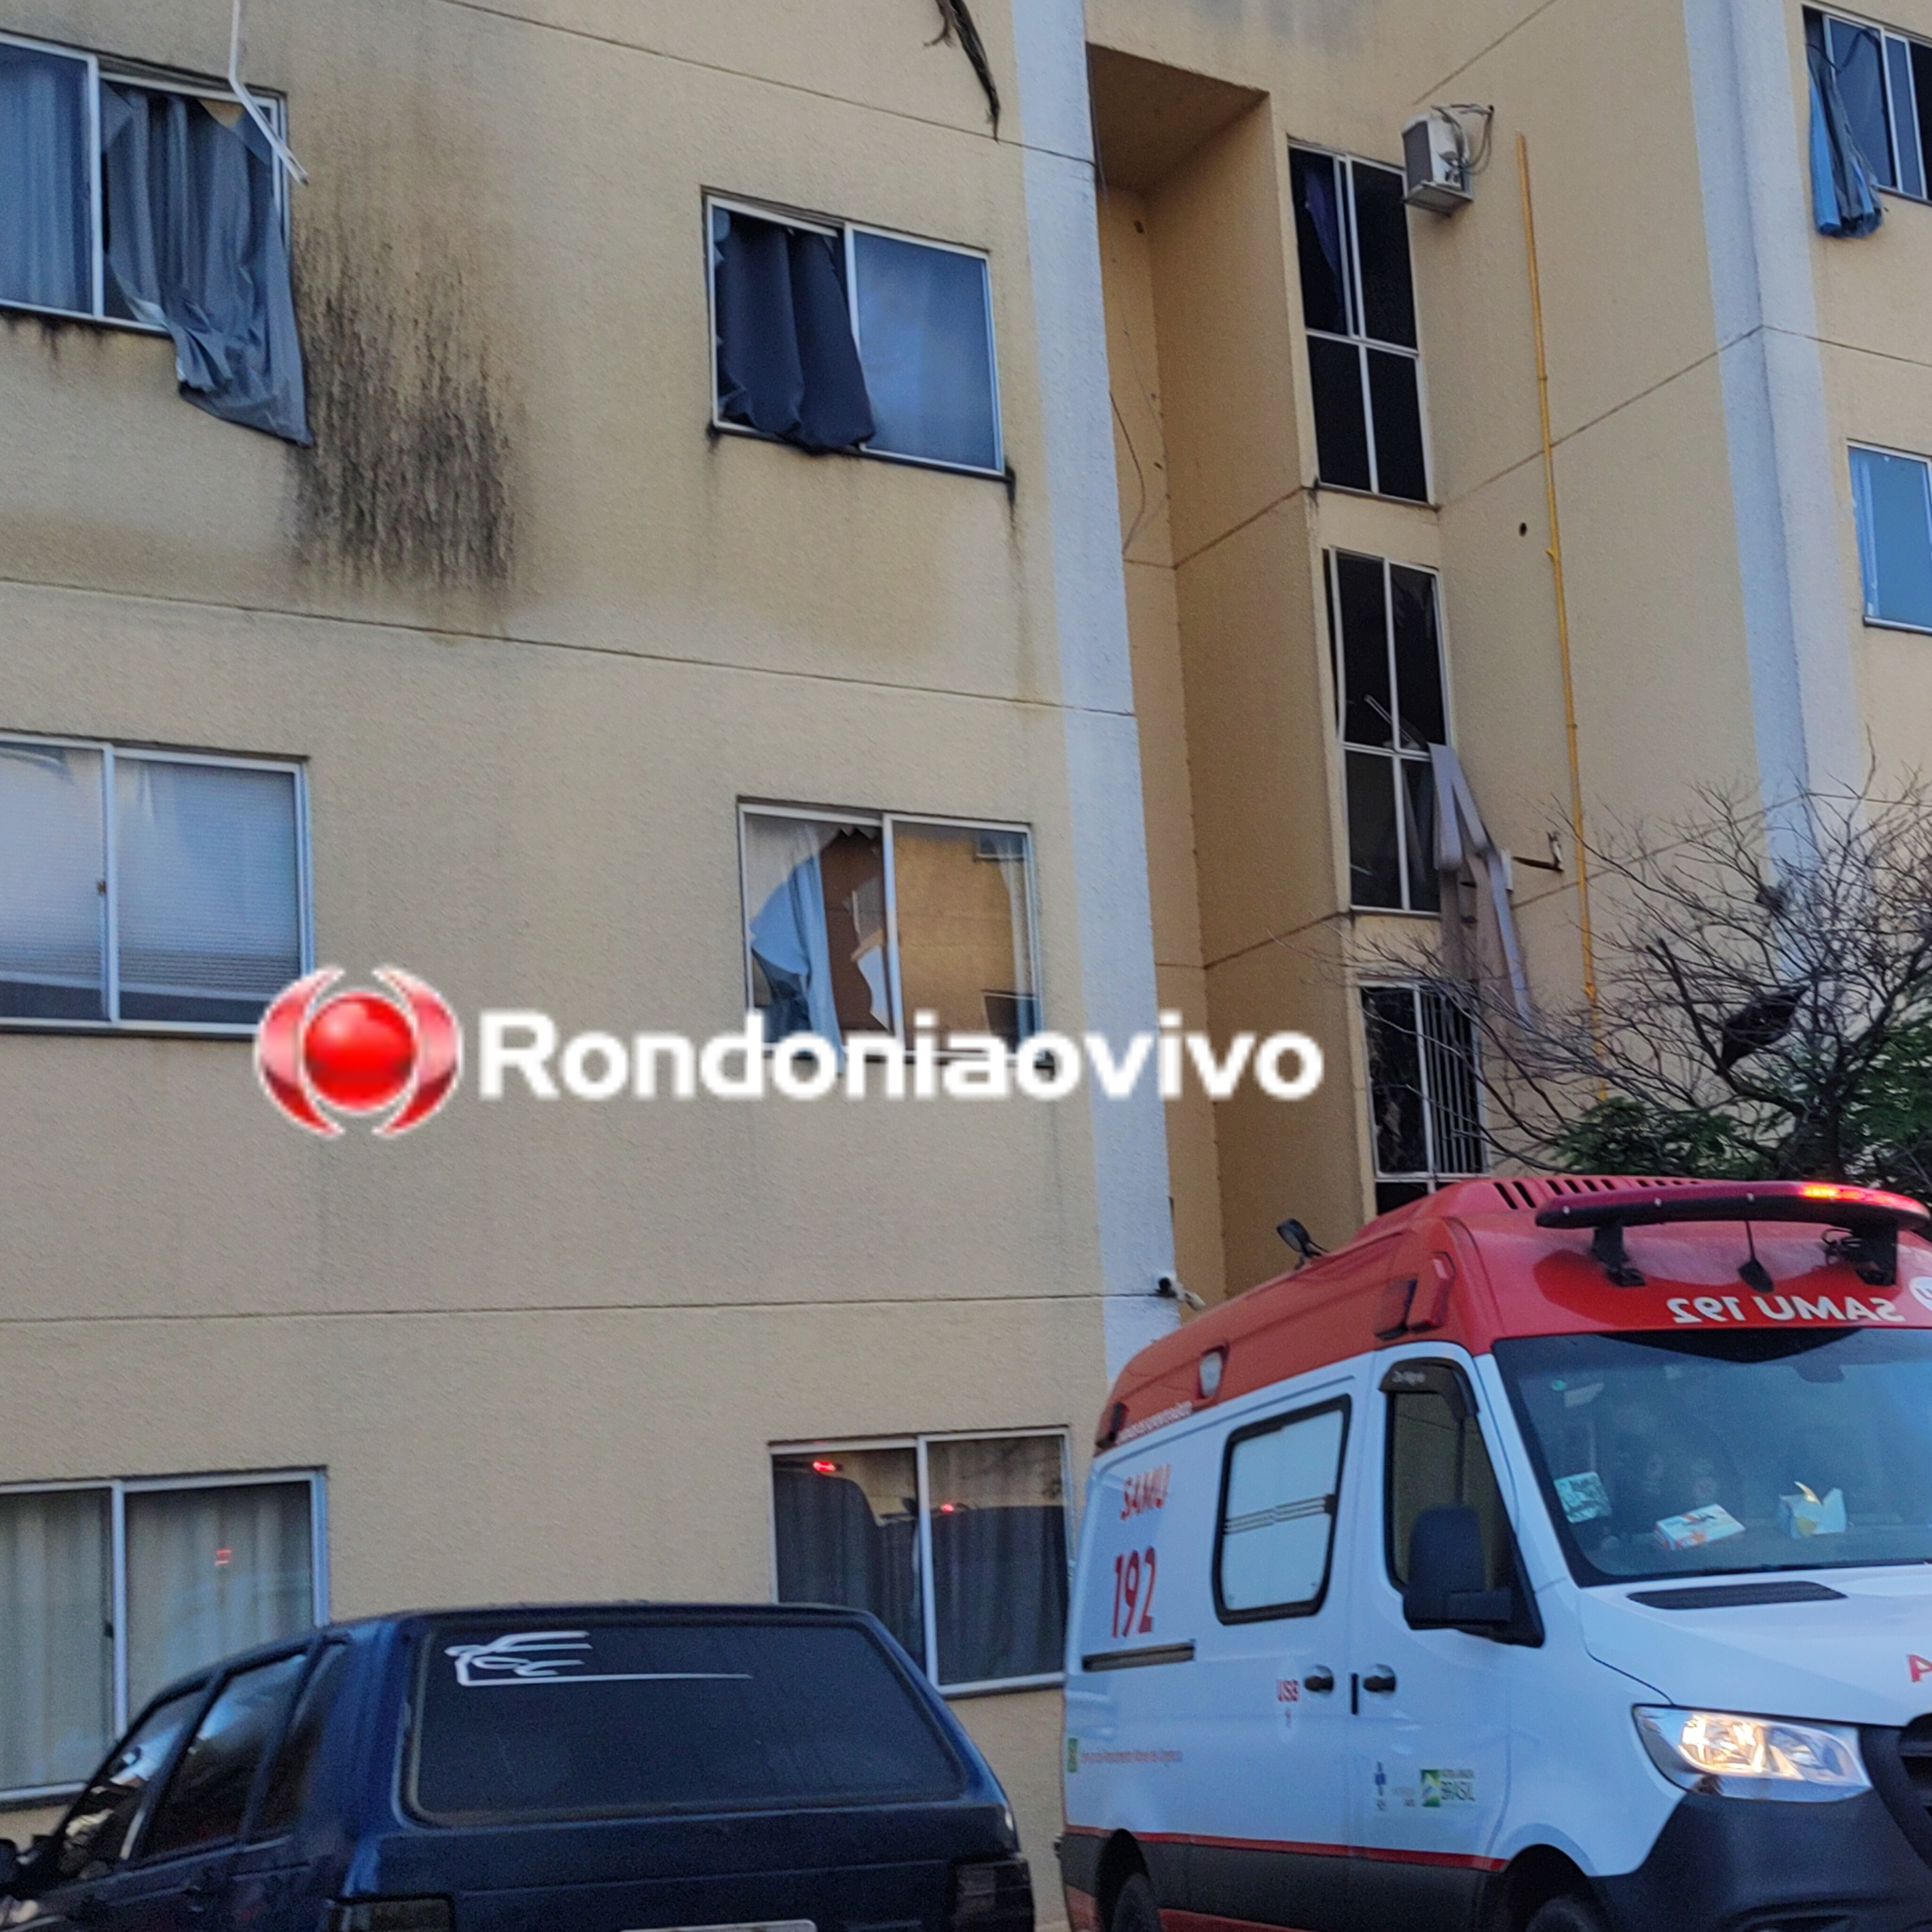 VÍDEO: Explosão em apartamento deixa duas pessoas em estado grave 